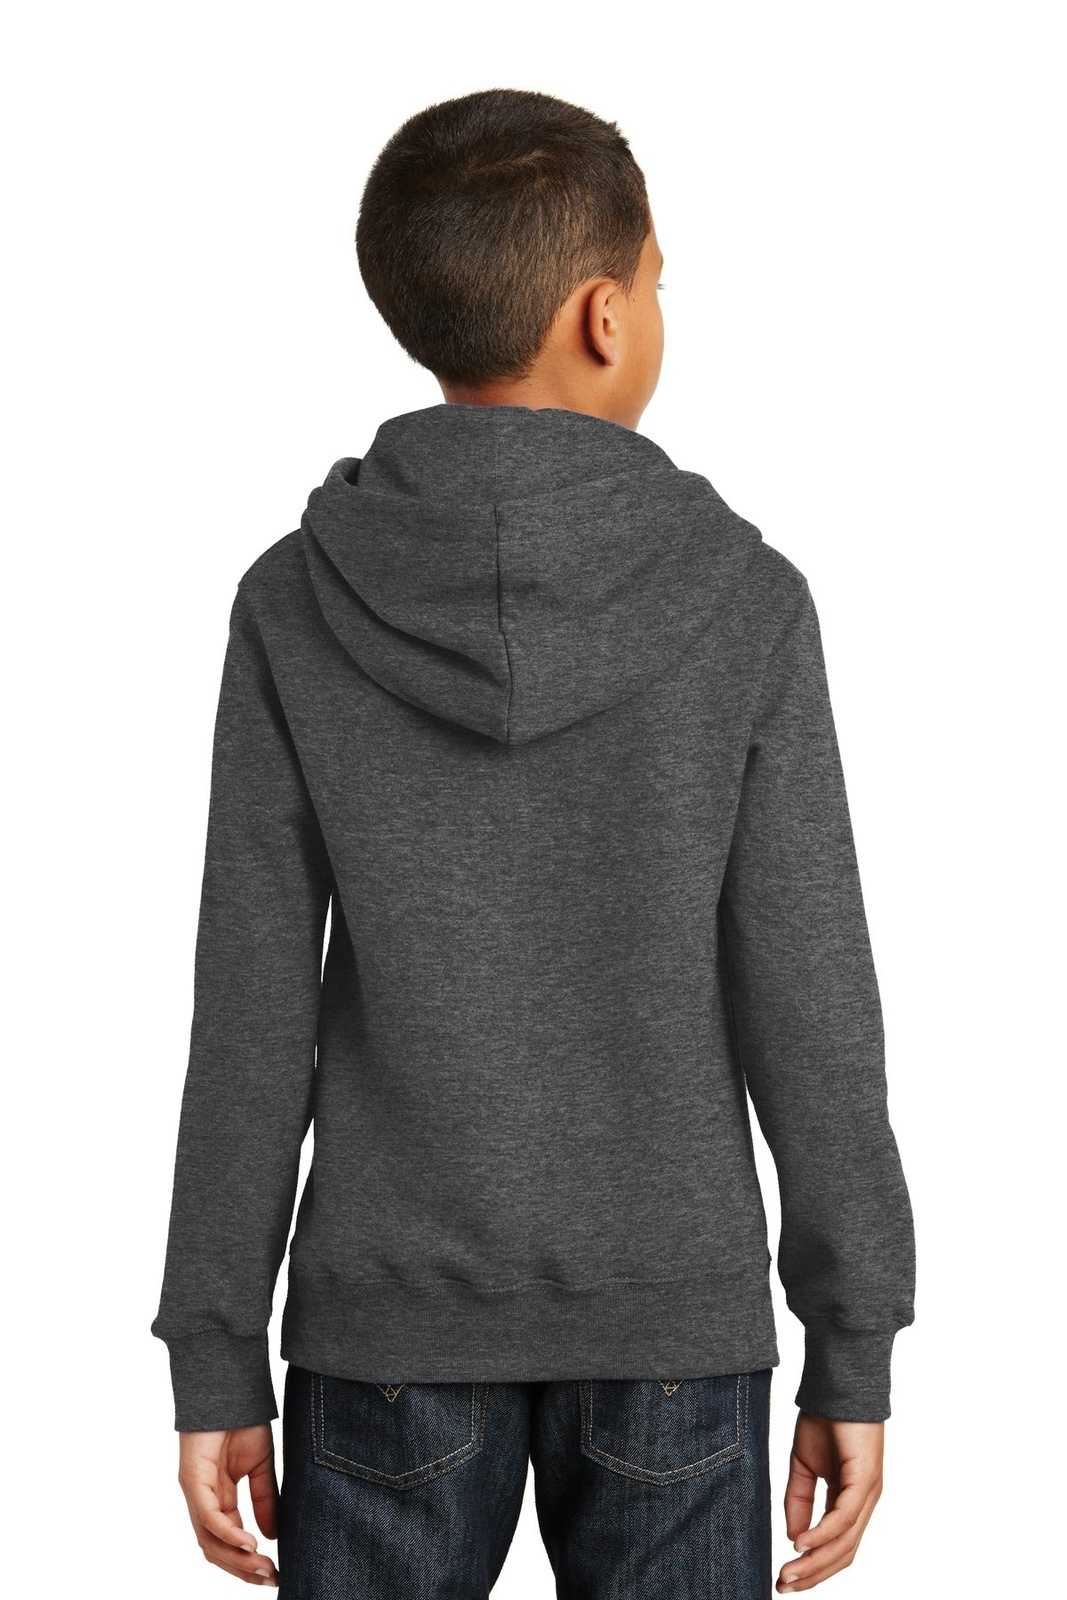 Port & Company PC850YH Youth Fan Favorite Fleece Pullover Hooded Sweatshirt - Dark Heather Gray - HIT a Double - 1